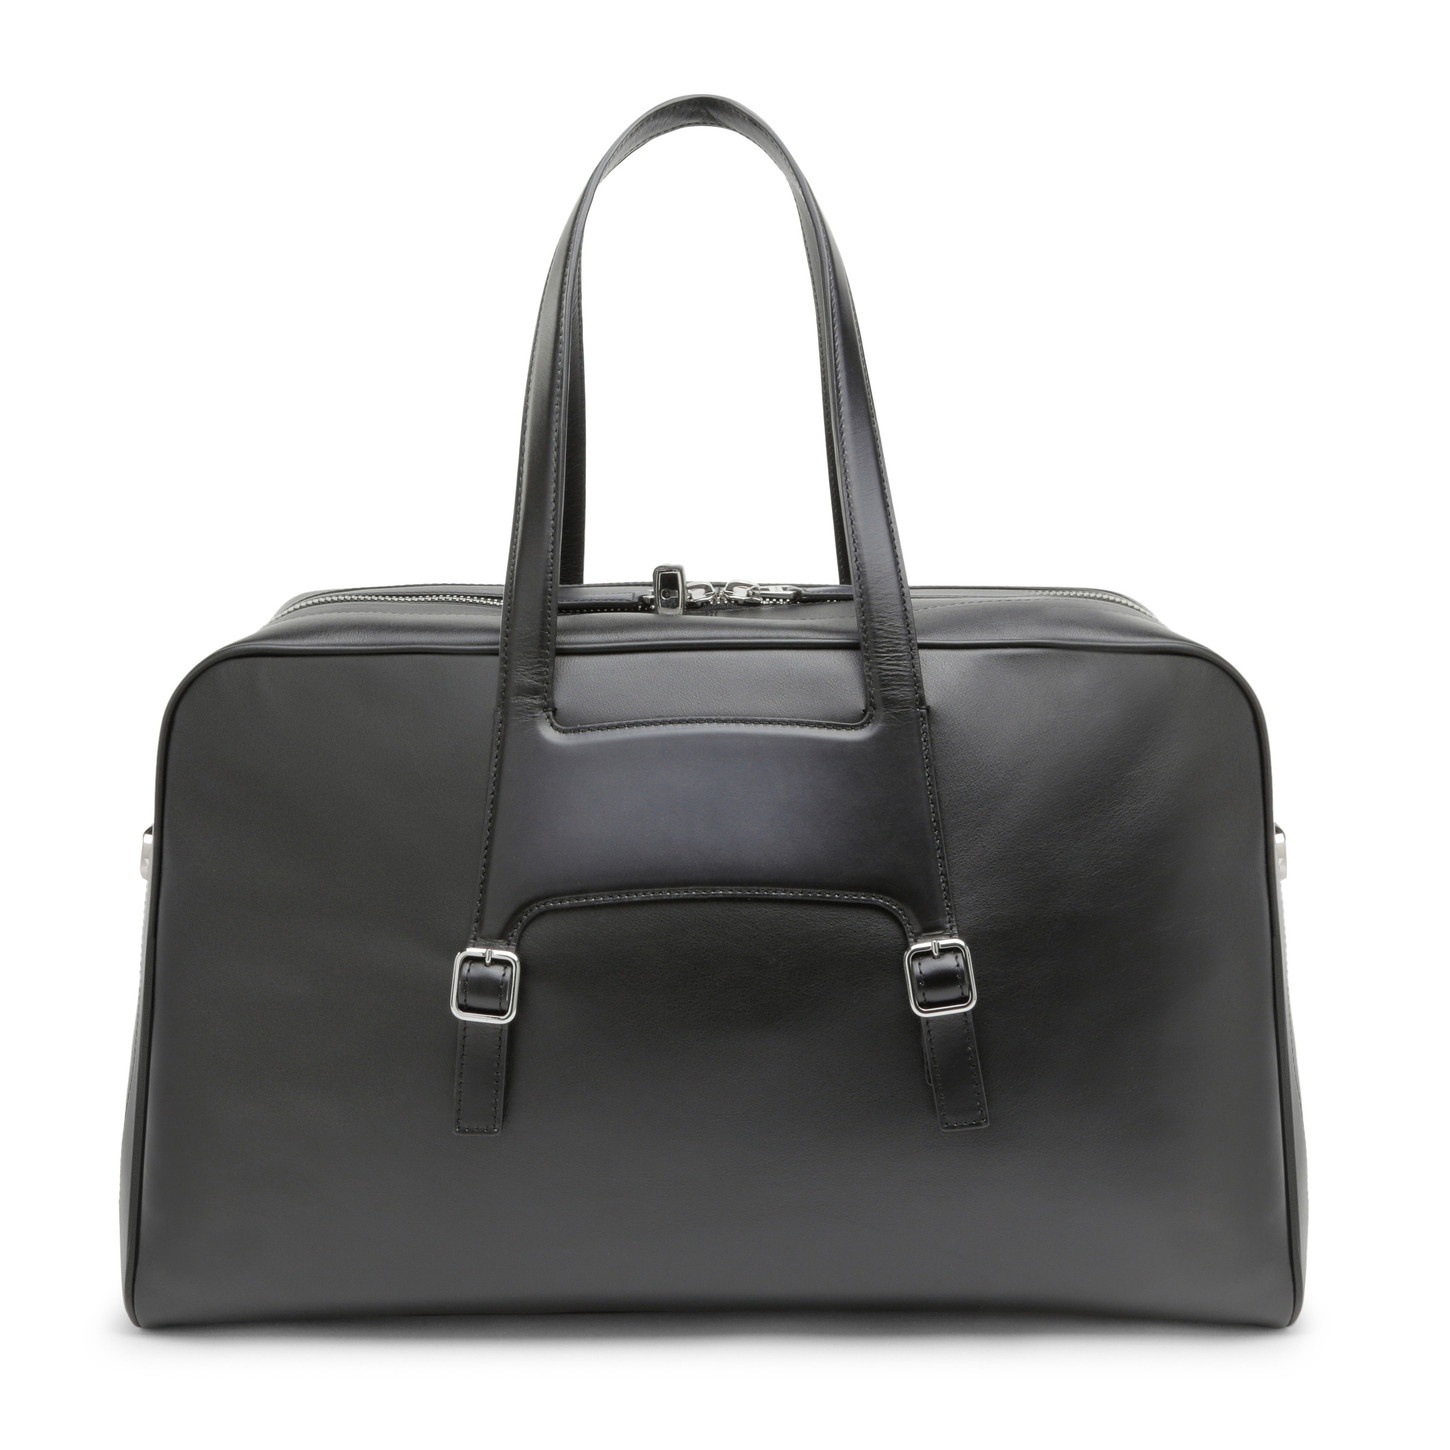 Black leather weekend bag - 7